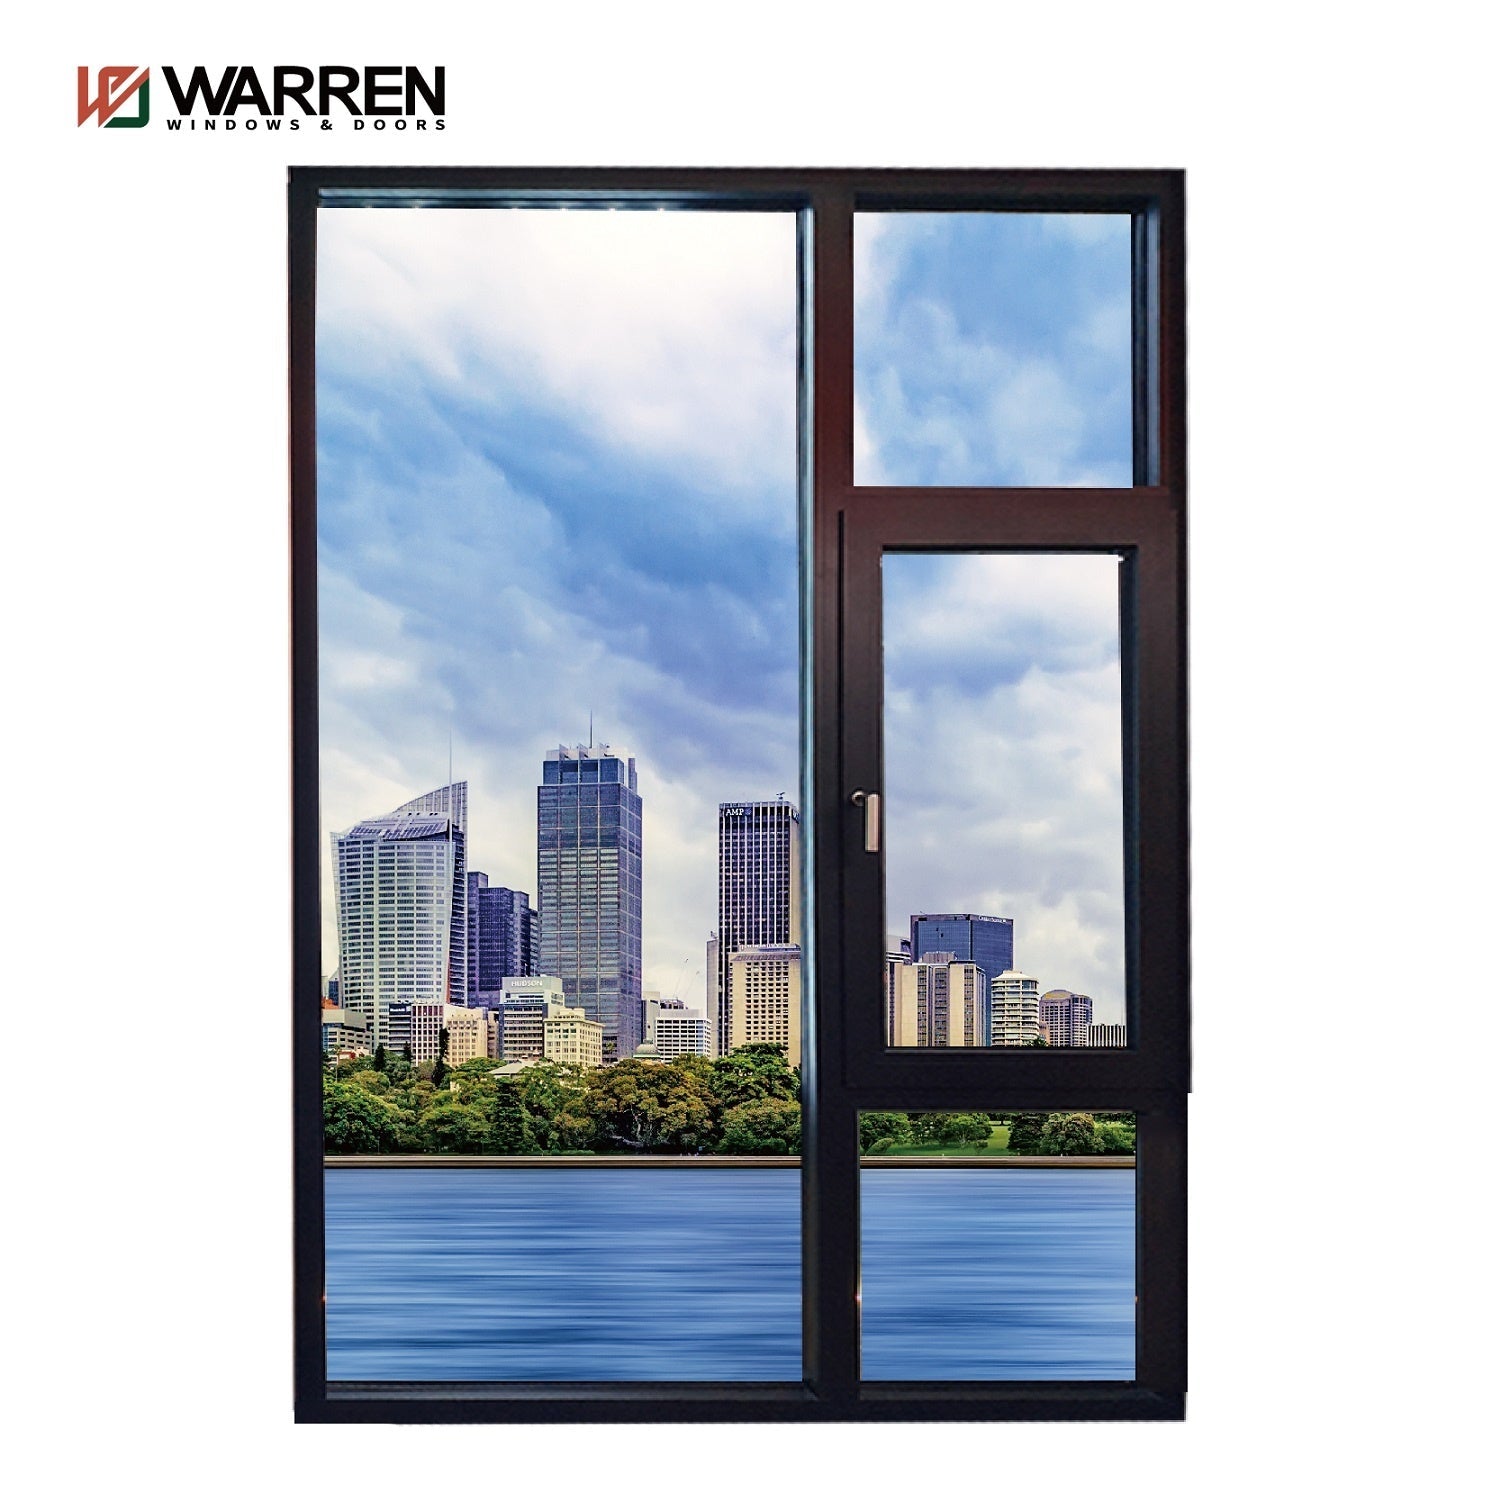 Warren 24x60 casement window aluminium thermal break 6060-T66 patio glass